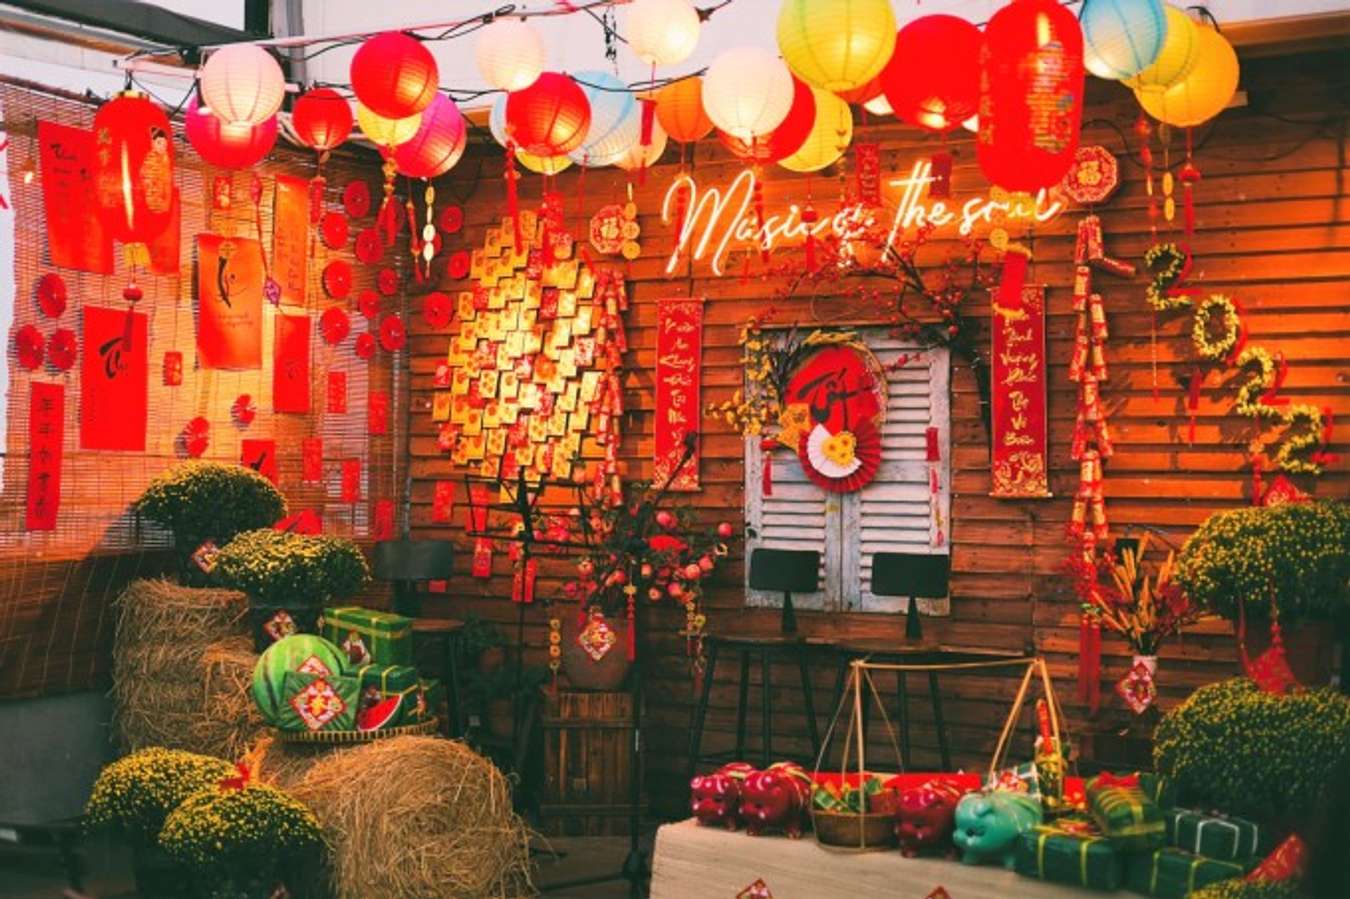 Hãy đến quán cafe trang trí tết Sài Gòn để trải nghiệm không khí rộn ràng đón xuân mới. Với thiết kế đẹp mắt, sự phối hợp màu sắc hài hòa và menu đa dạng, bạn sẽ có những giờ phút thư giãn đáng nhớ bên người thân và bạn bè.